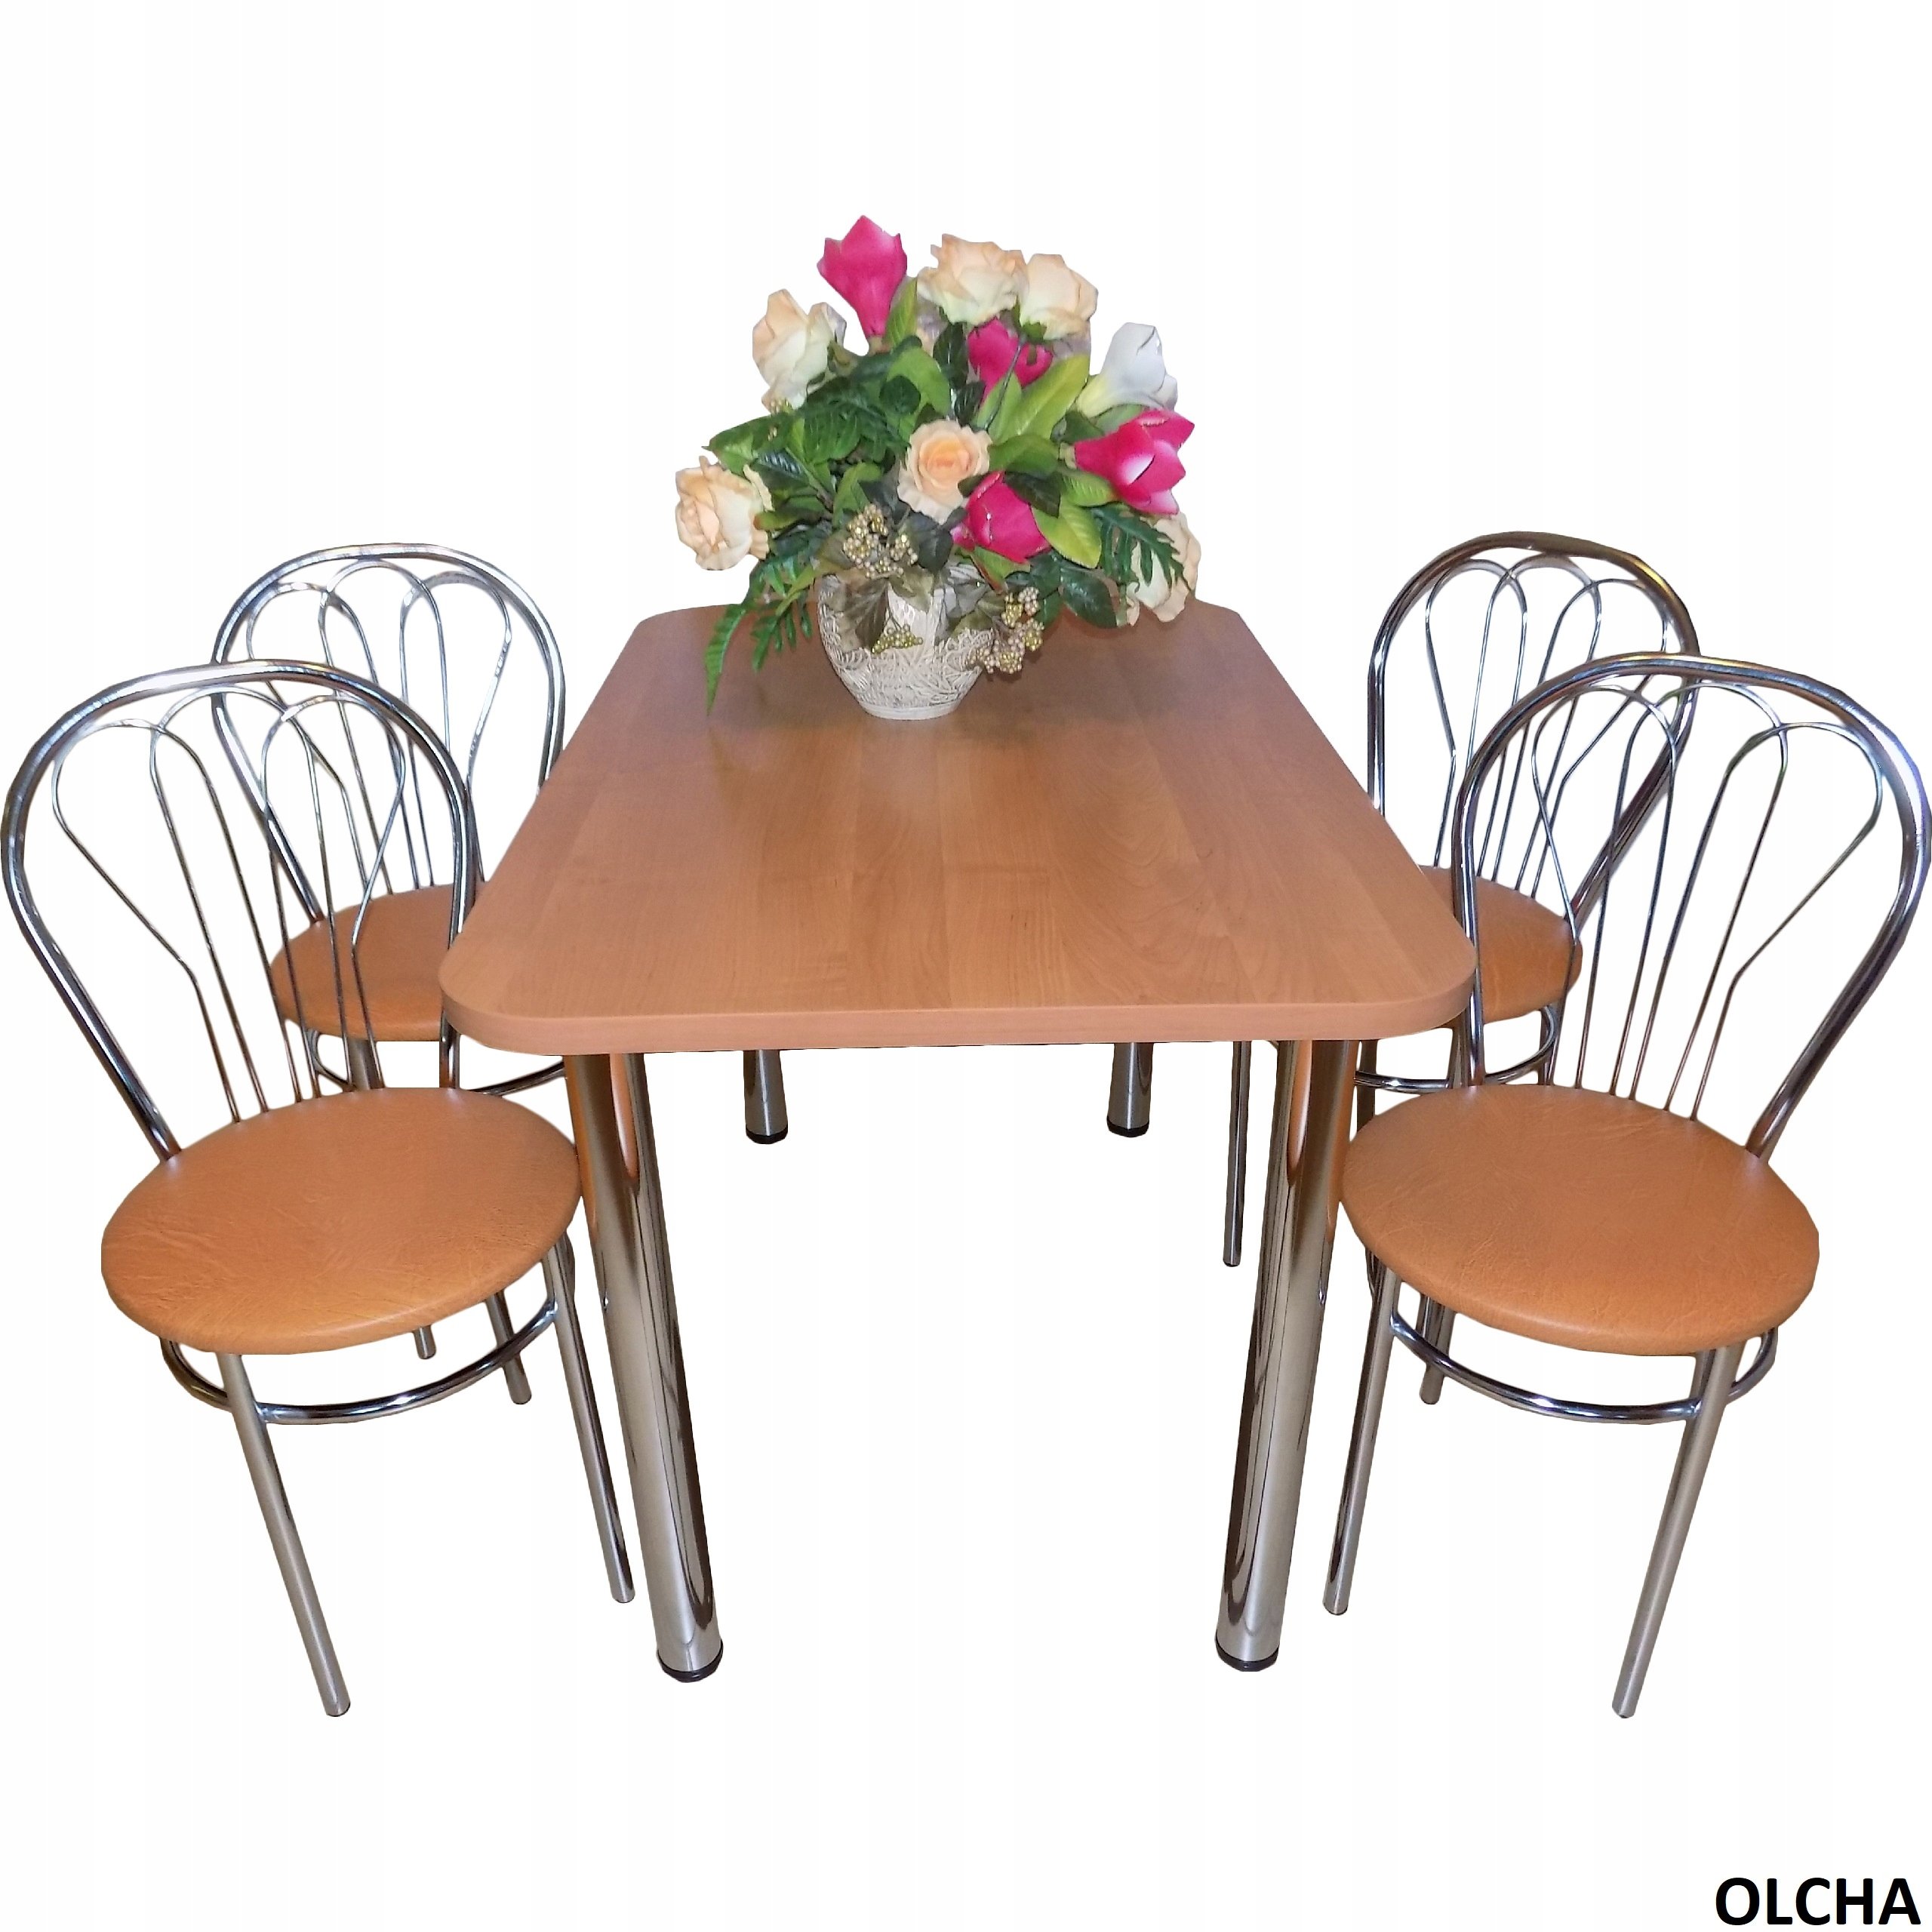 Стол кухонный набор. Кухонный стол и стулья. Кухонный набор стол и стулья. Кухонный столик со стульями. Кухонный стол и стулья комплект.